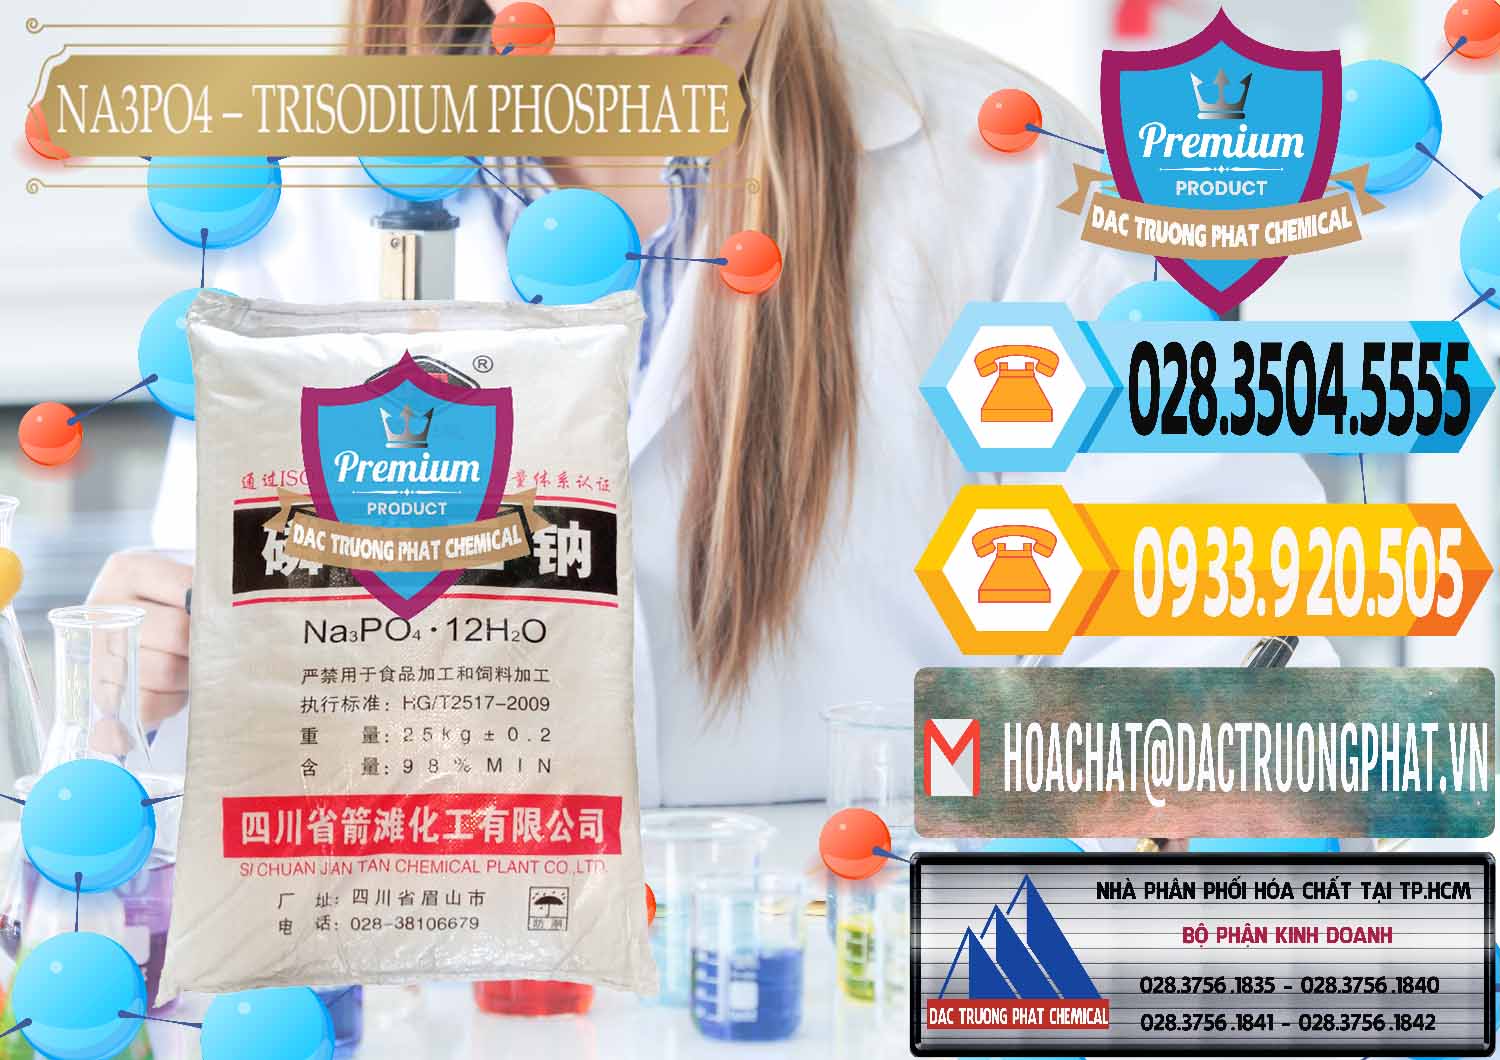 Công ty kinh doanh và bán Na3PO4 – Trisodium Phosphate Trung Quốc China JT - 0102 - Đơn vị chuyên kinh doanh _ phân phối hóa chất tại TP.HCM - hoachattayrua.net